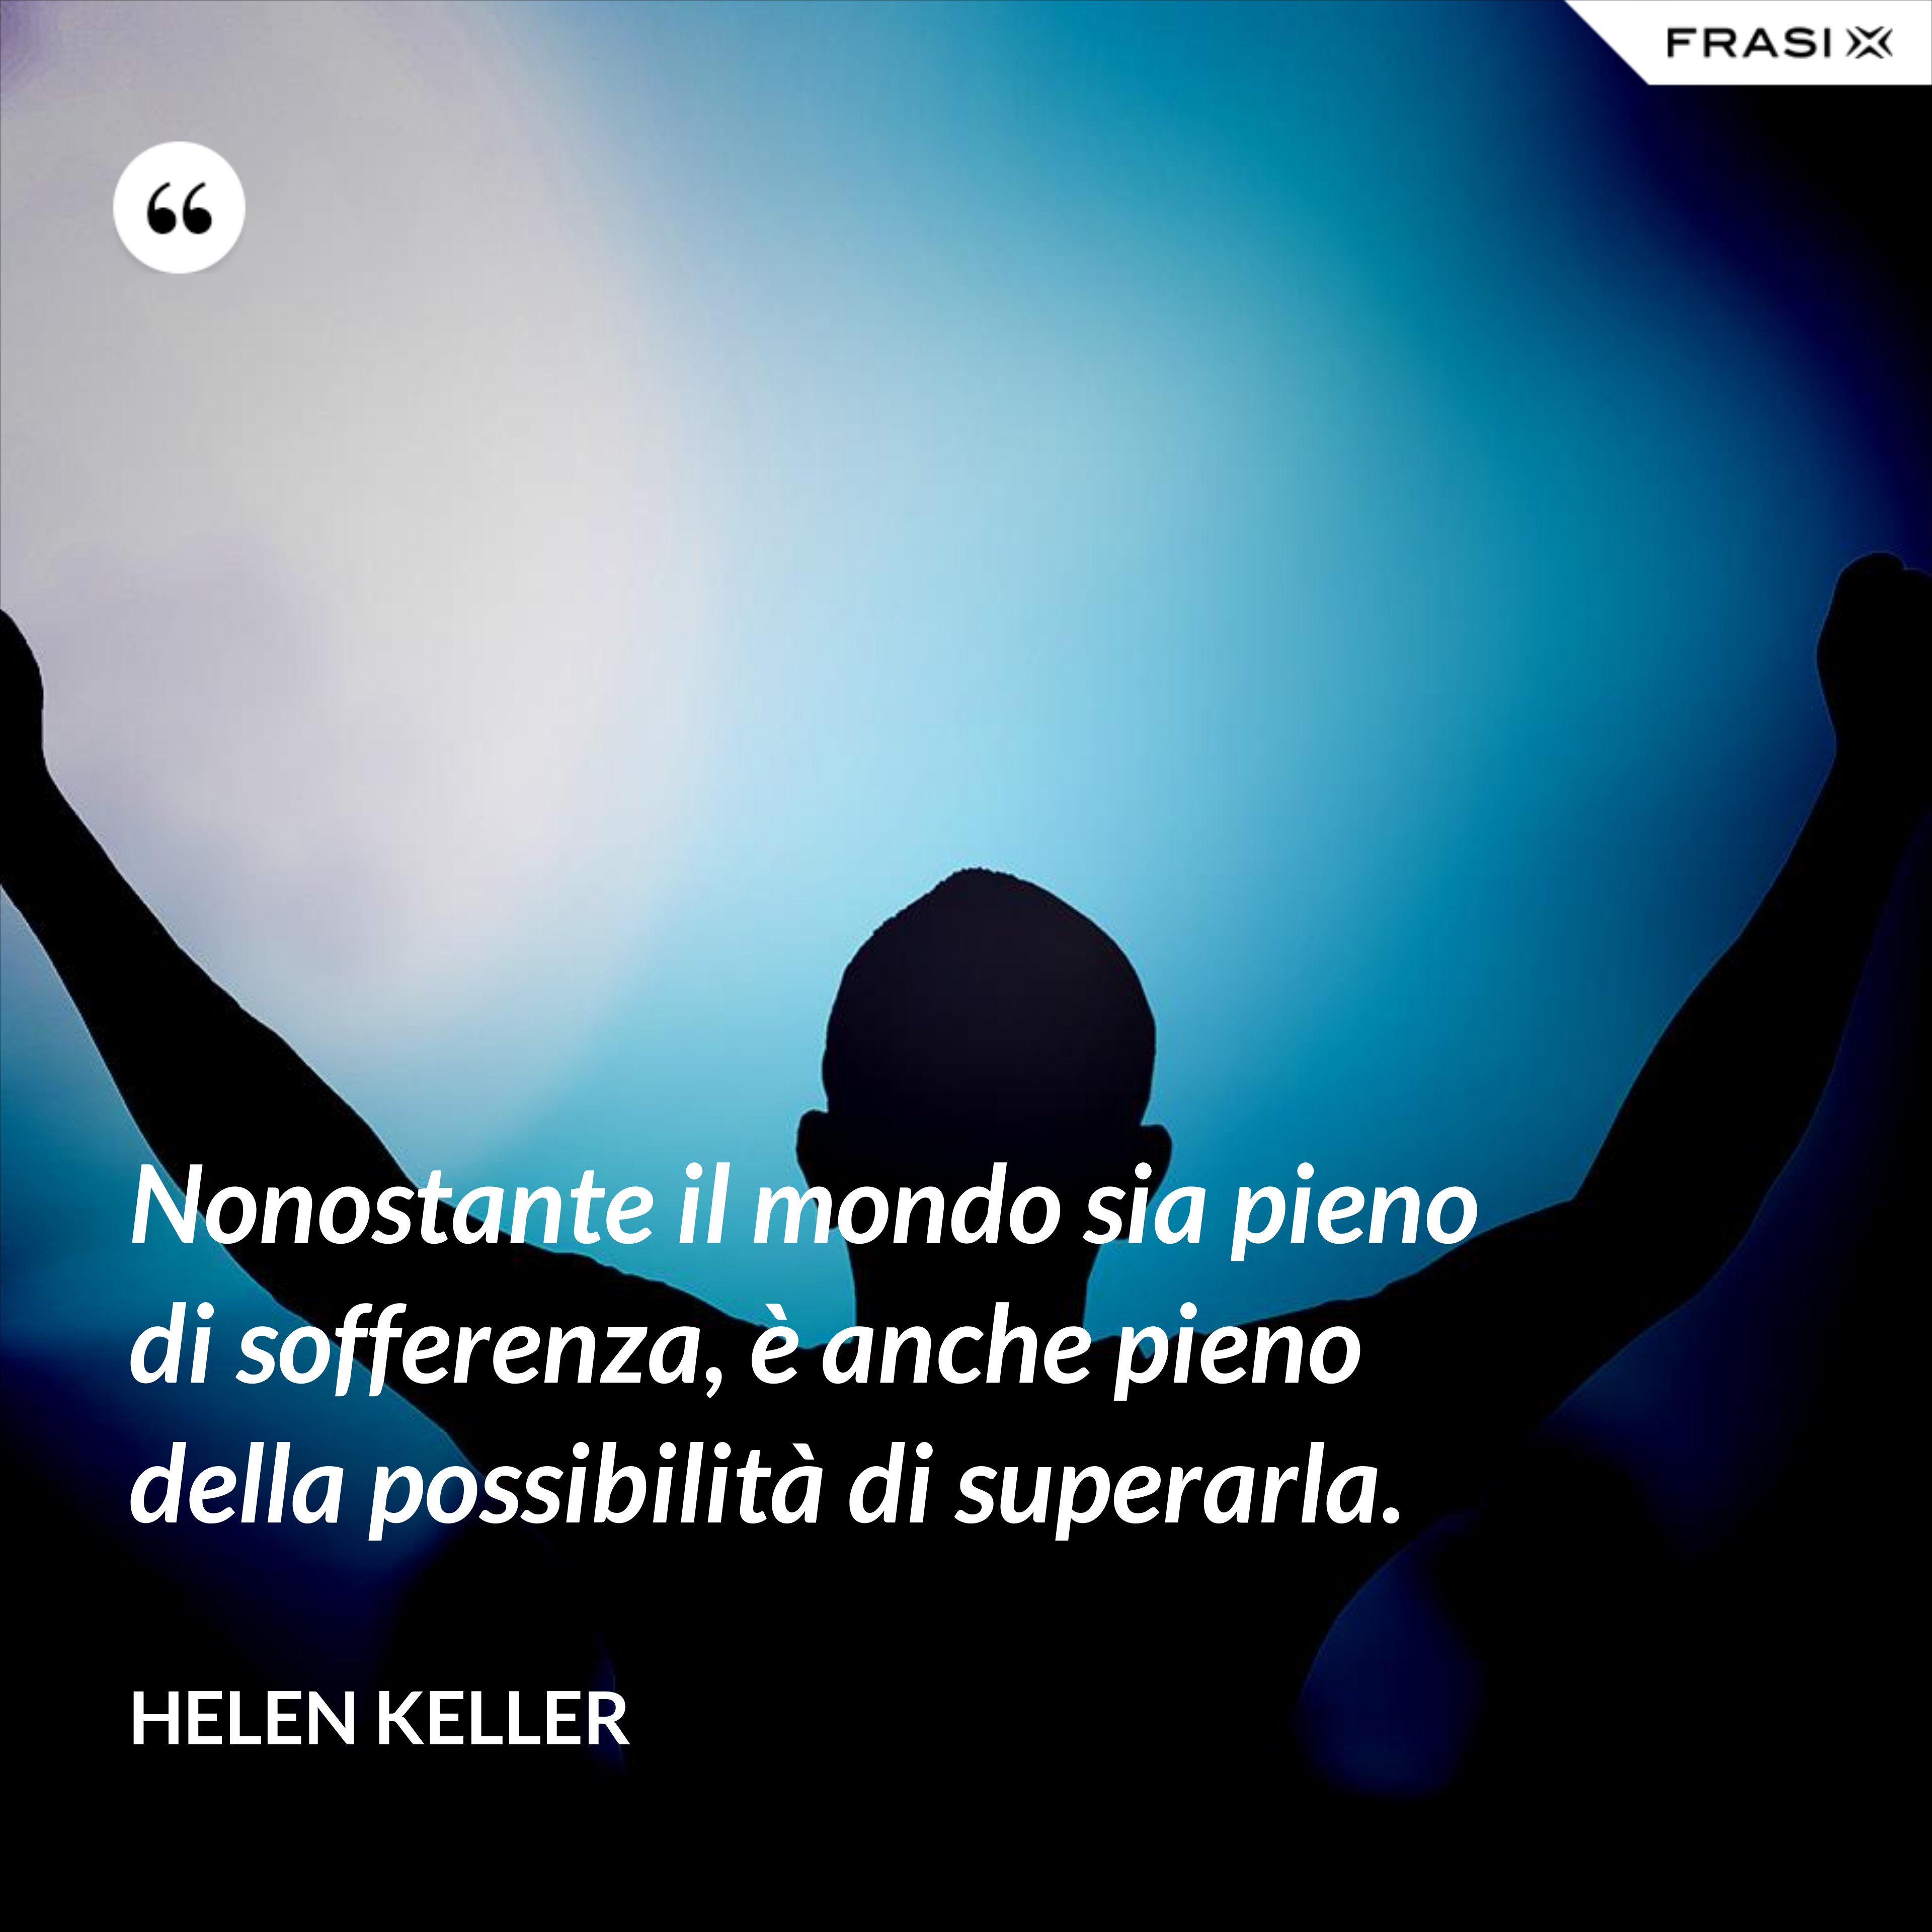 Nonostante il mondo sia pieno di sofferenza, è anche pieno della possibilità di superarla. - Helen Keller